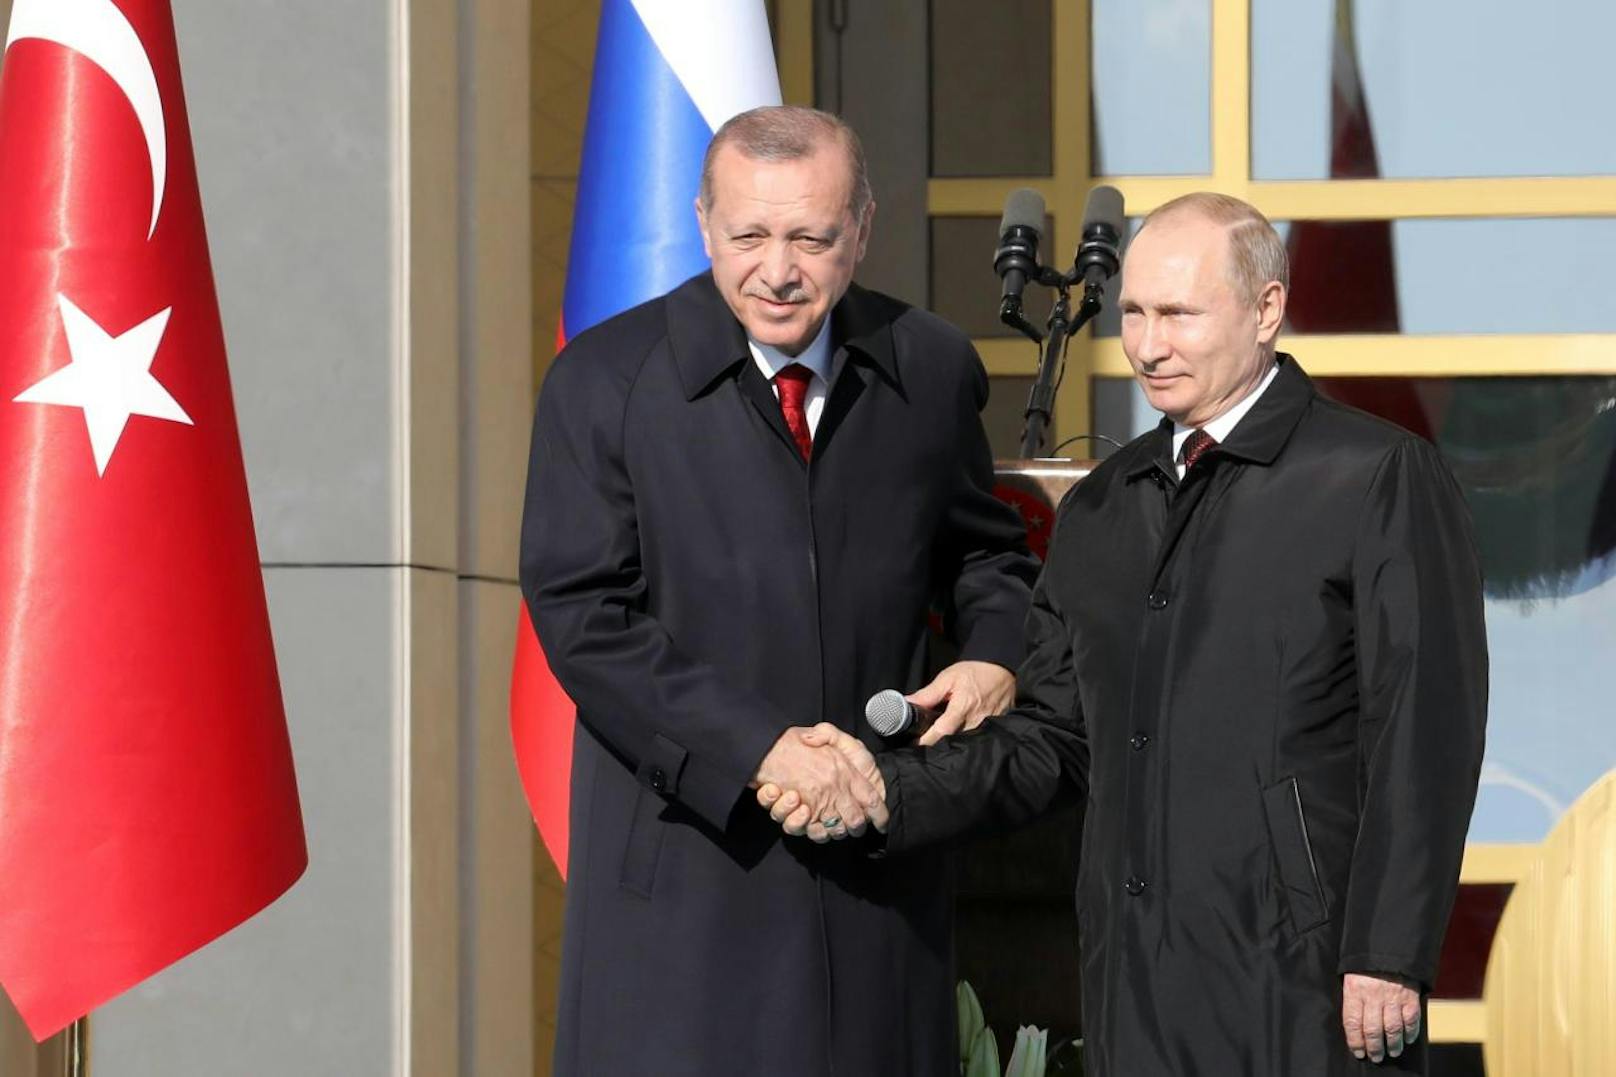 Erdogan würdigte das russisch-türkische Projekt als historischen Moment in den Beziehungen zwischen den beiden Ländern. Federführend bei der Errichtung des Atomkraftwerks Akkuyu an der Mittelmeerküste ist der staatliche russische Konzern Rosatom.